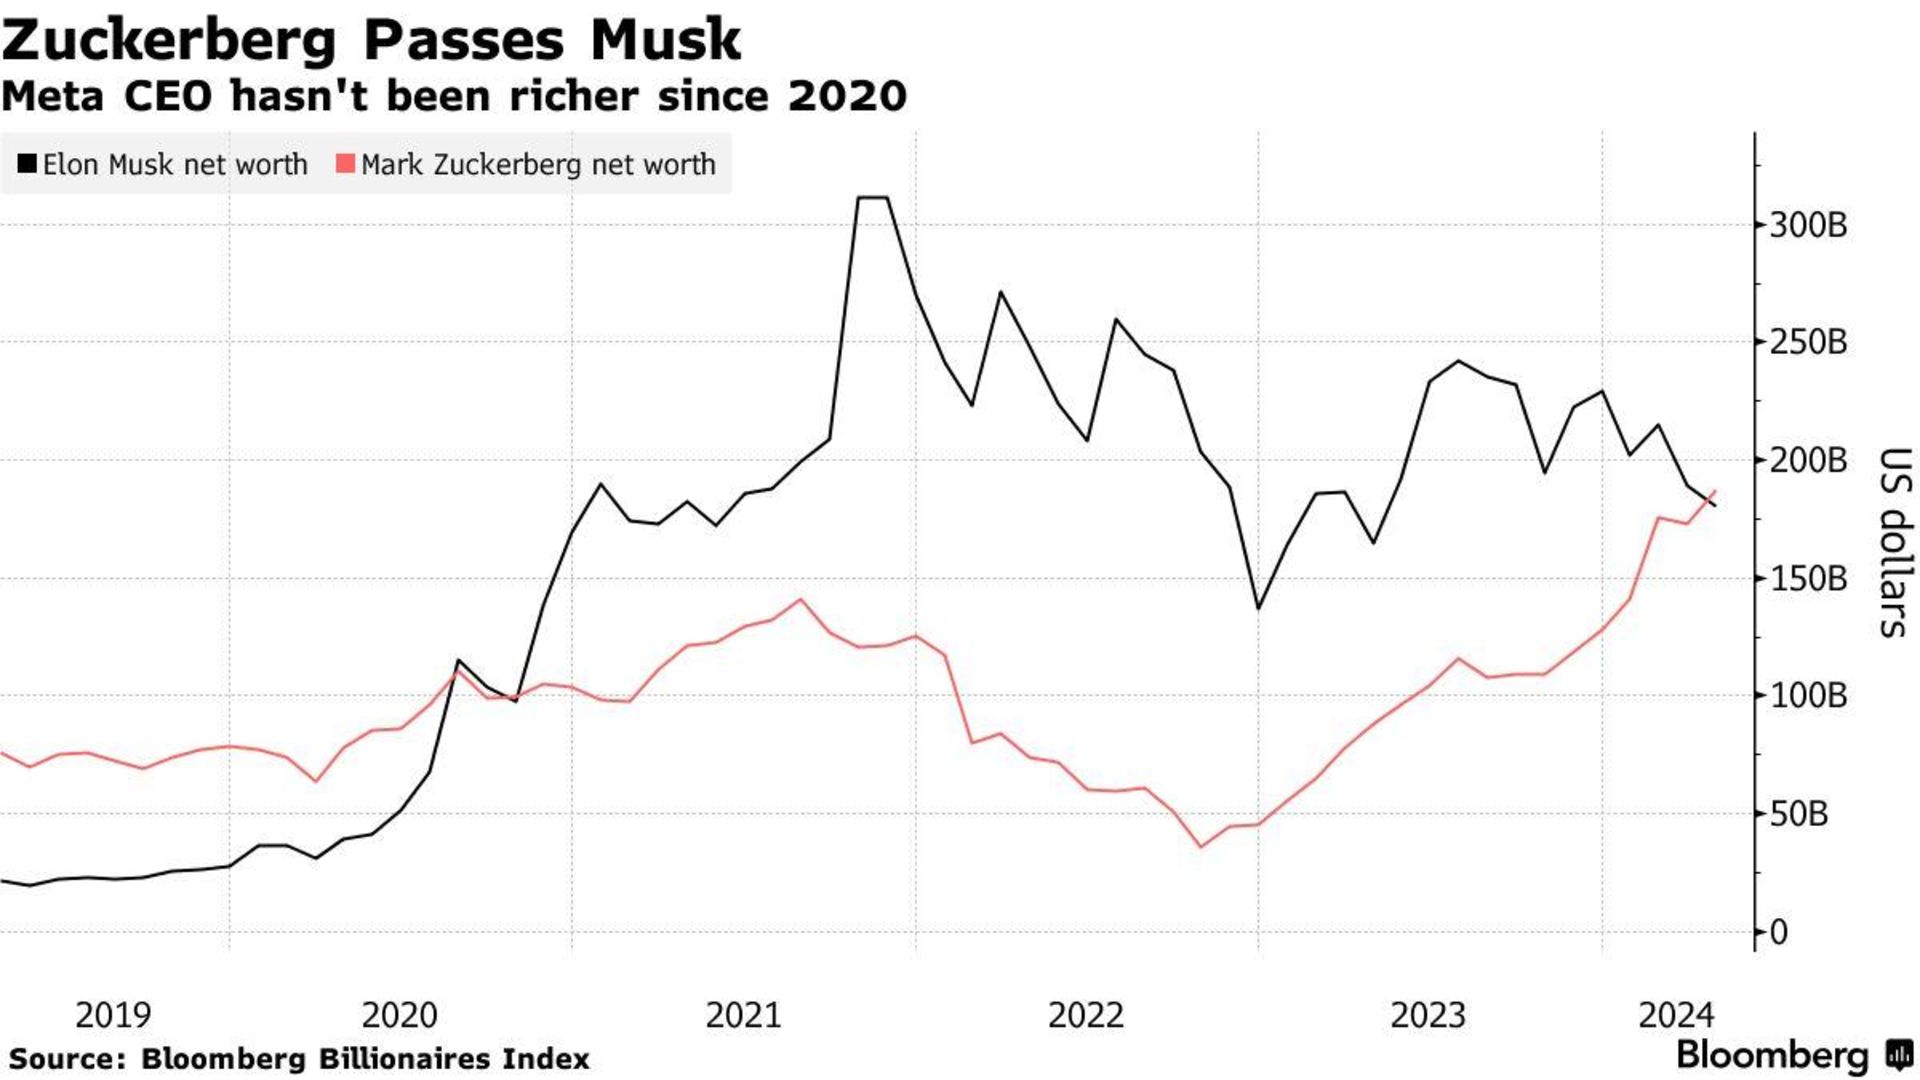 نمودار مقایسه ثروت مارک زاکربرگ و ایلان ماسک از سال ۲۰۱۹ تا ۲۰۲۴